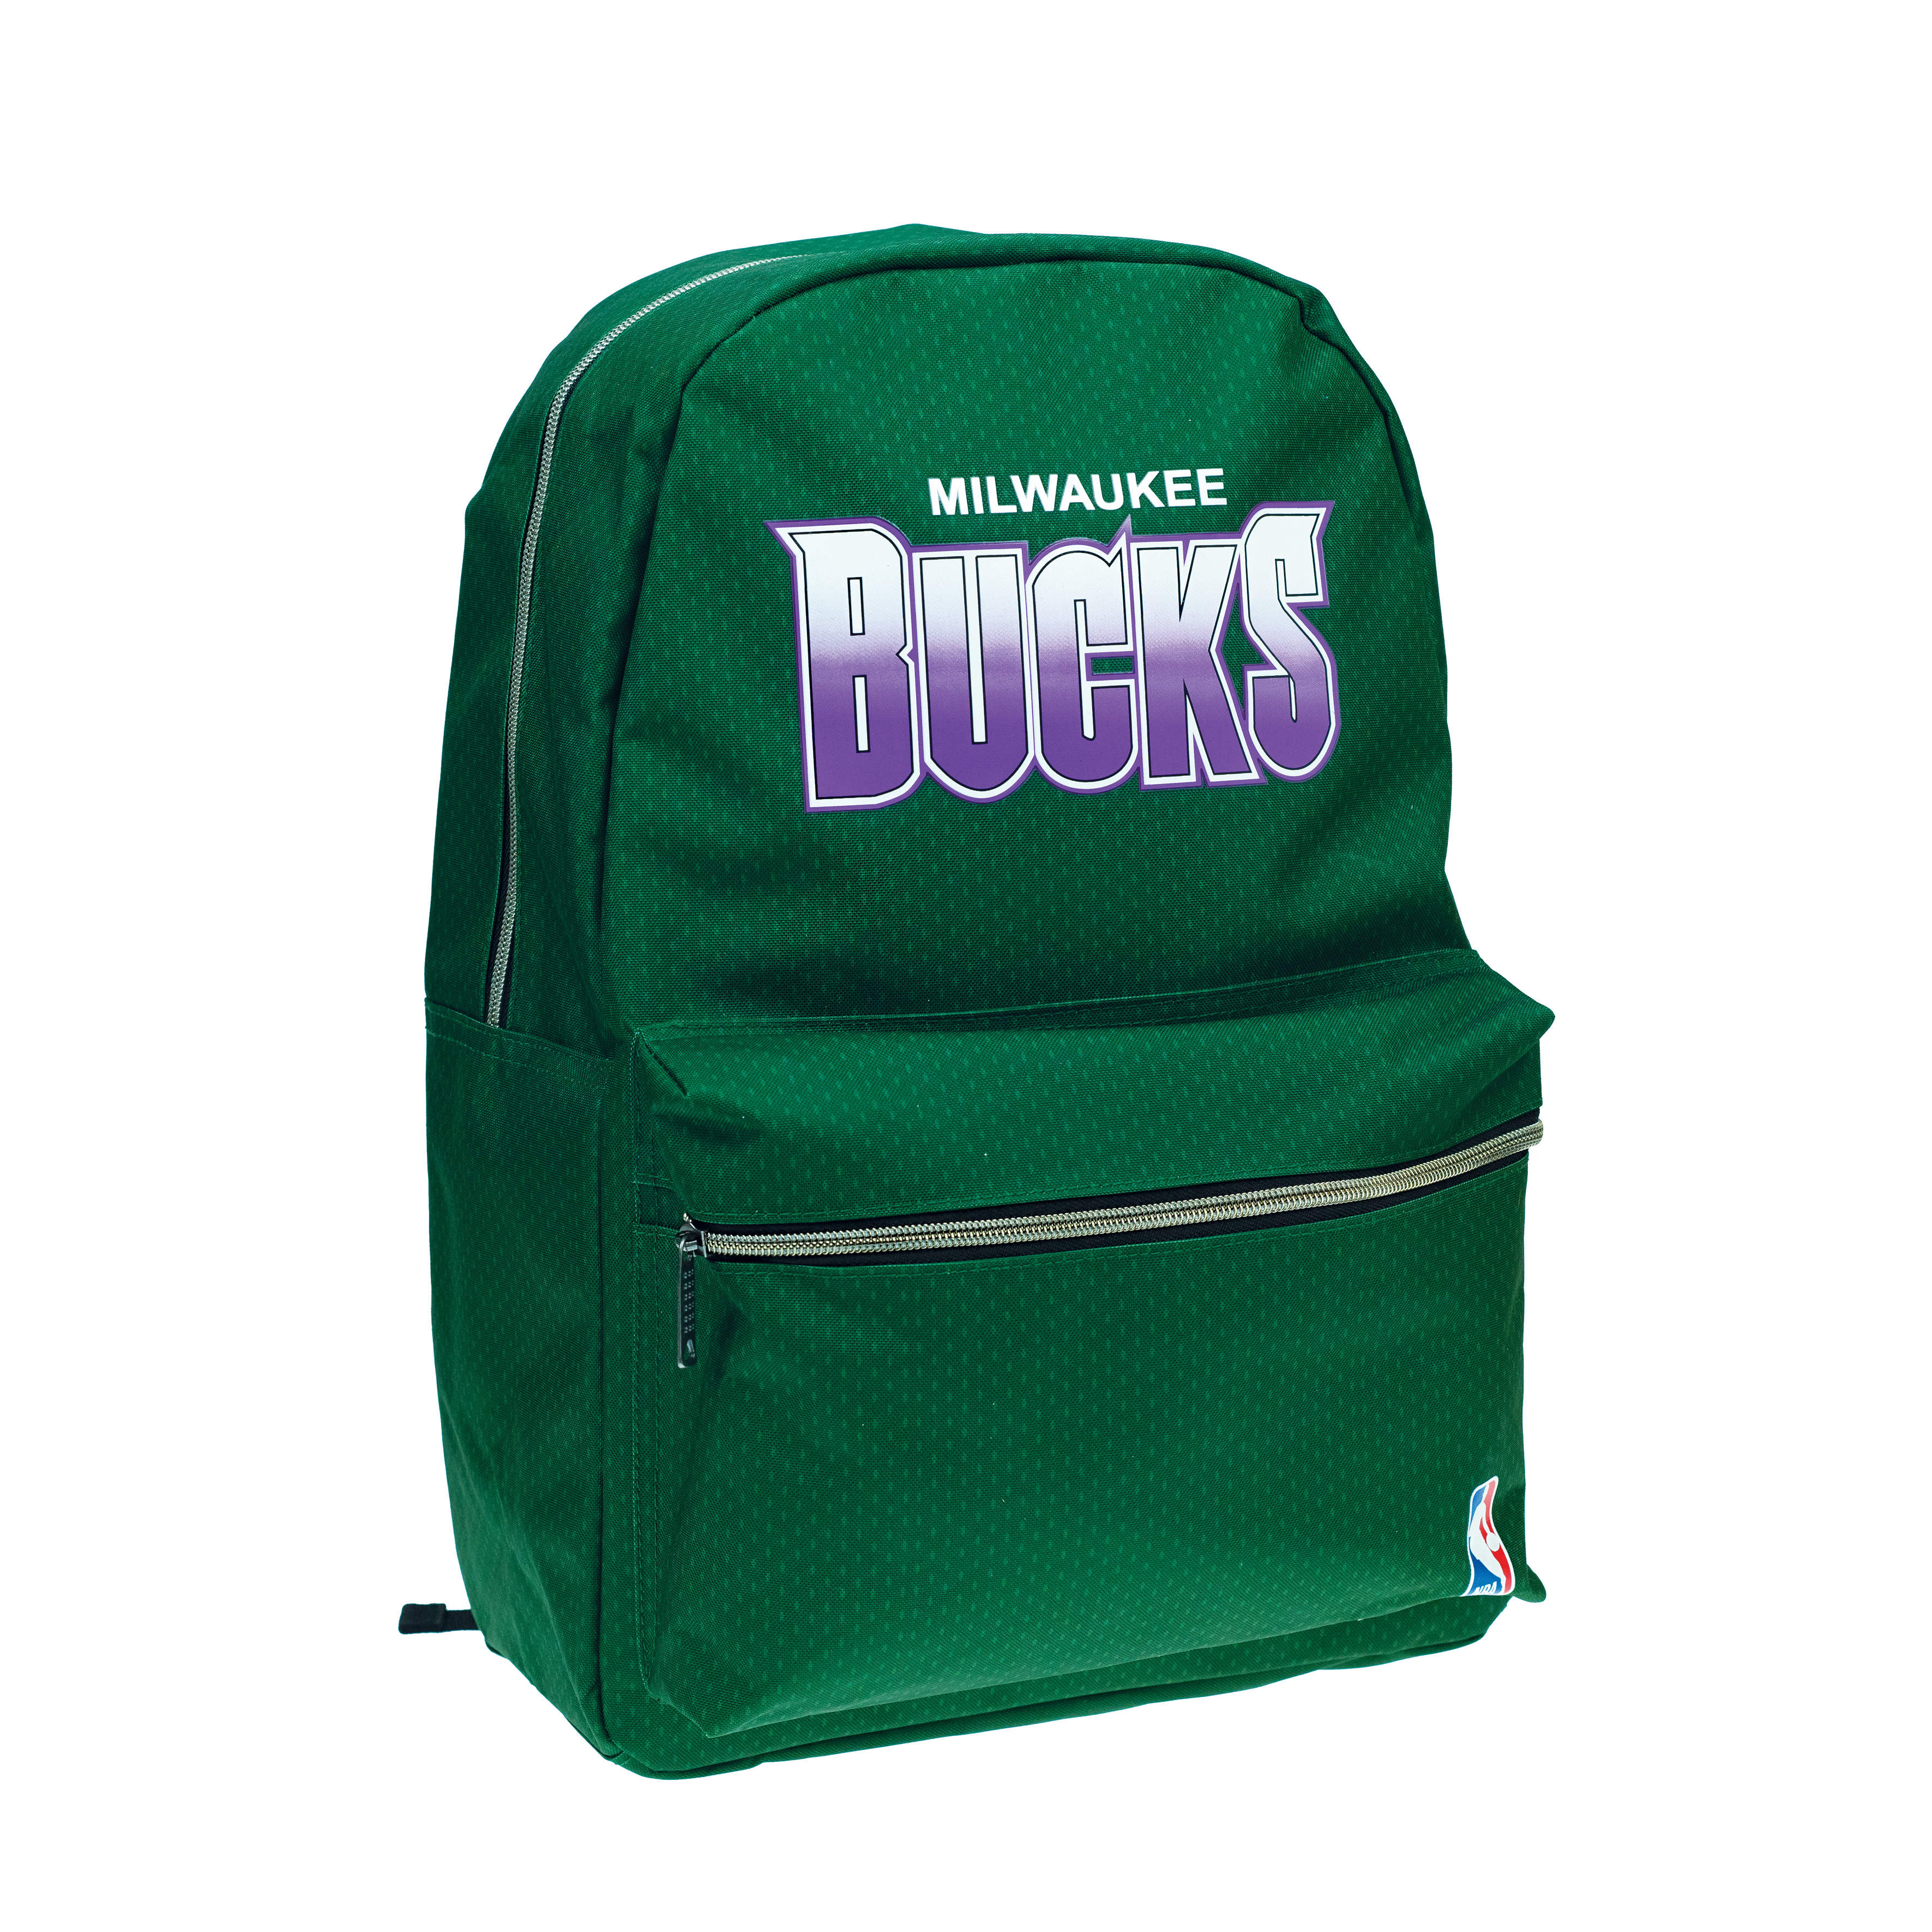 BMU - Back Me Up NBA MILWAUKEE BUCKS Σχολική Τσάντα Πλάτης Backpack Δημοτικού Πράσινη με 1 Κεντρική Θήκη  338-26033 